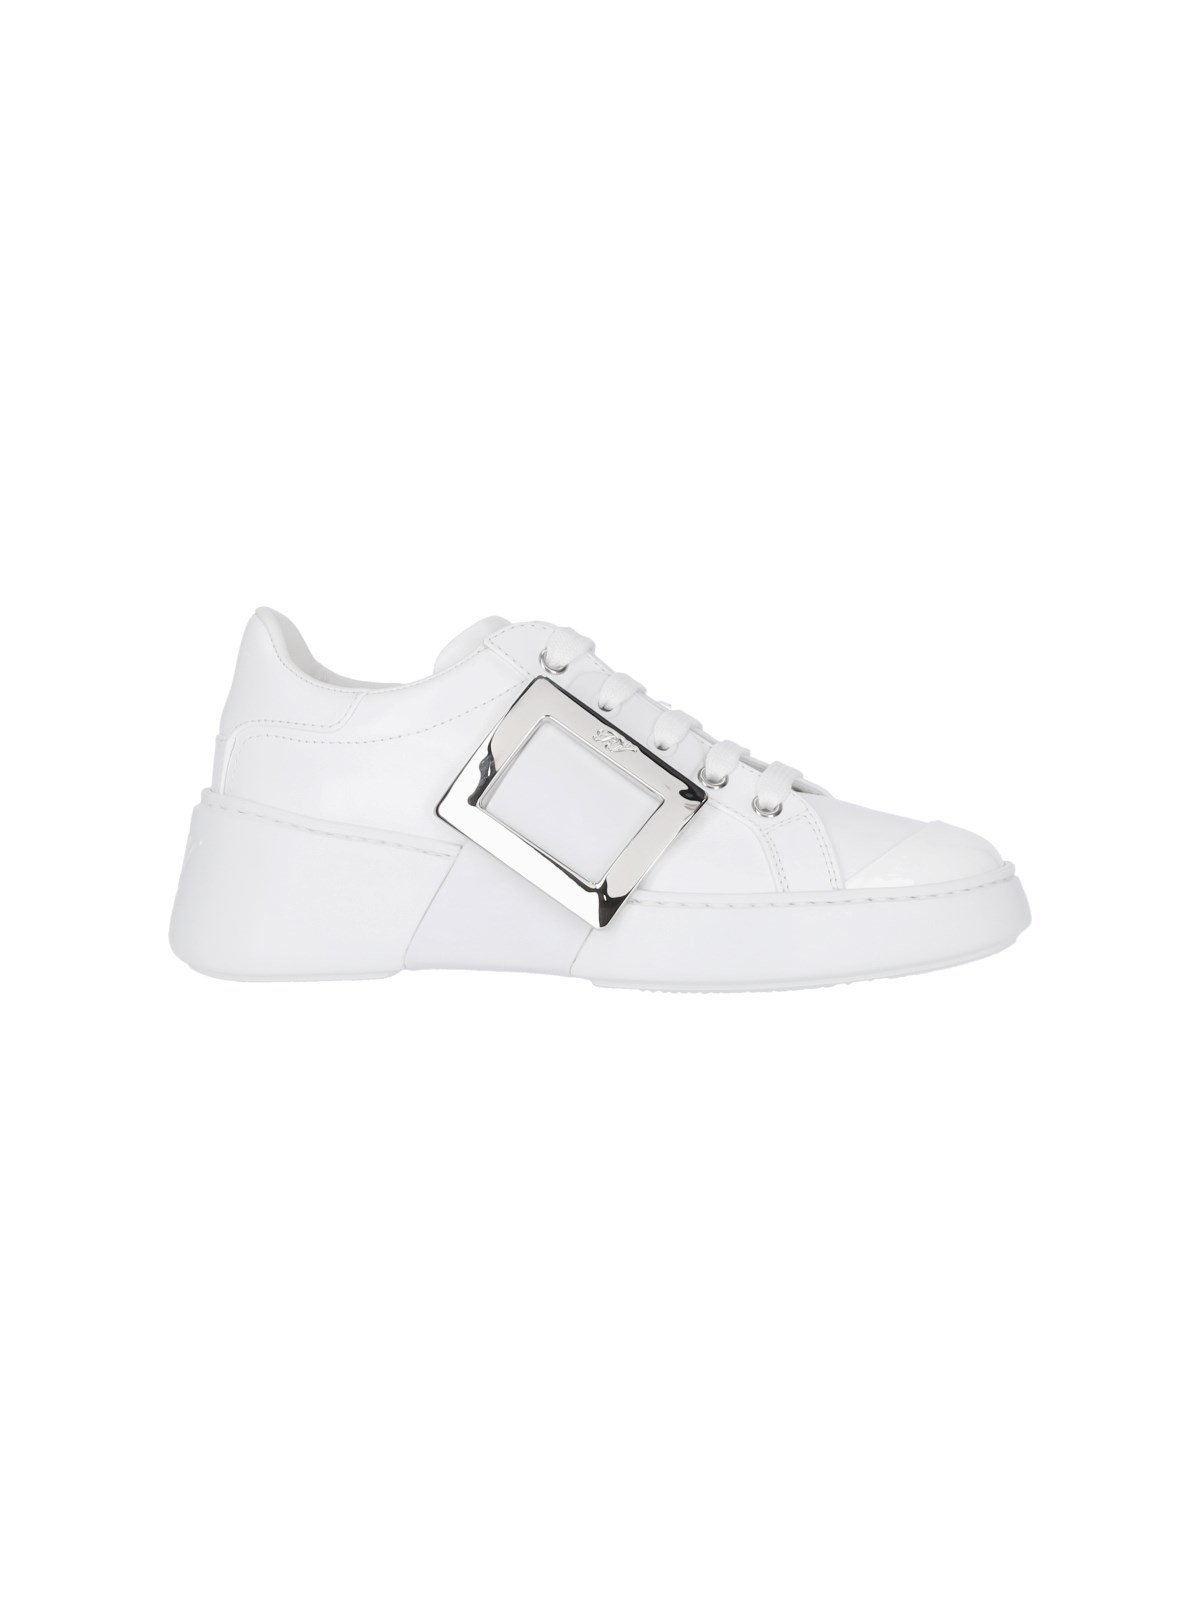 Roger Vivier Women's Viv Skate Leather Sneakers In White